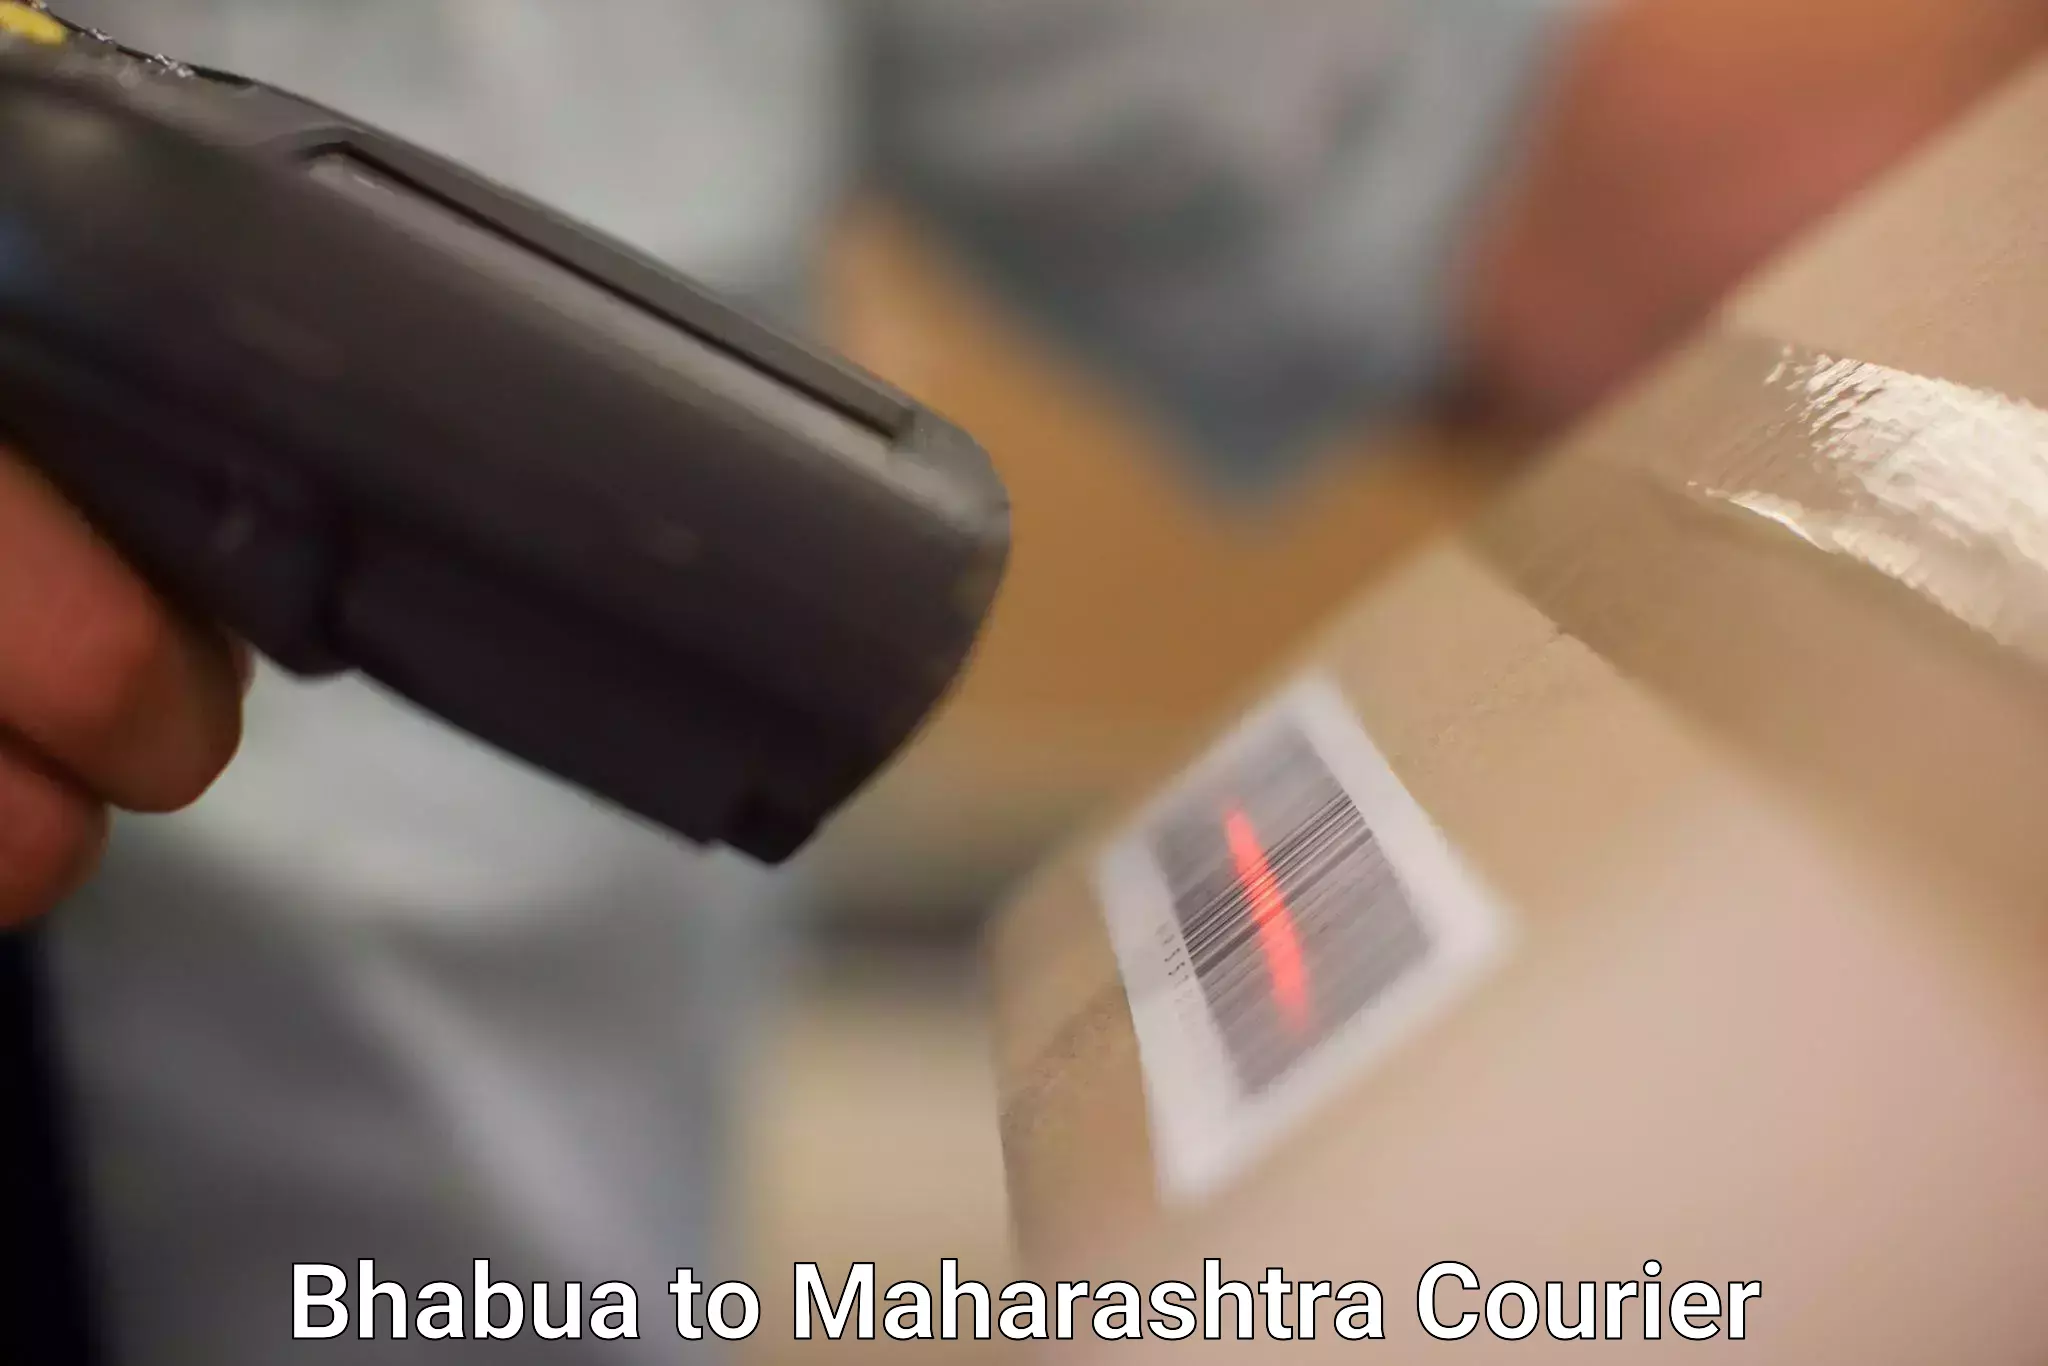 Seamless shipping experience in Bhabua to Maharashtra